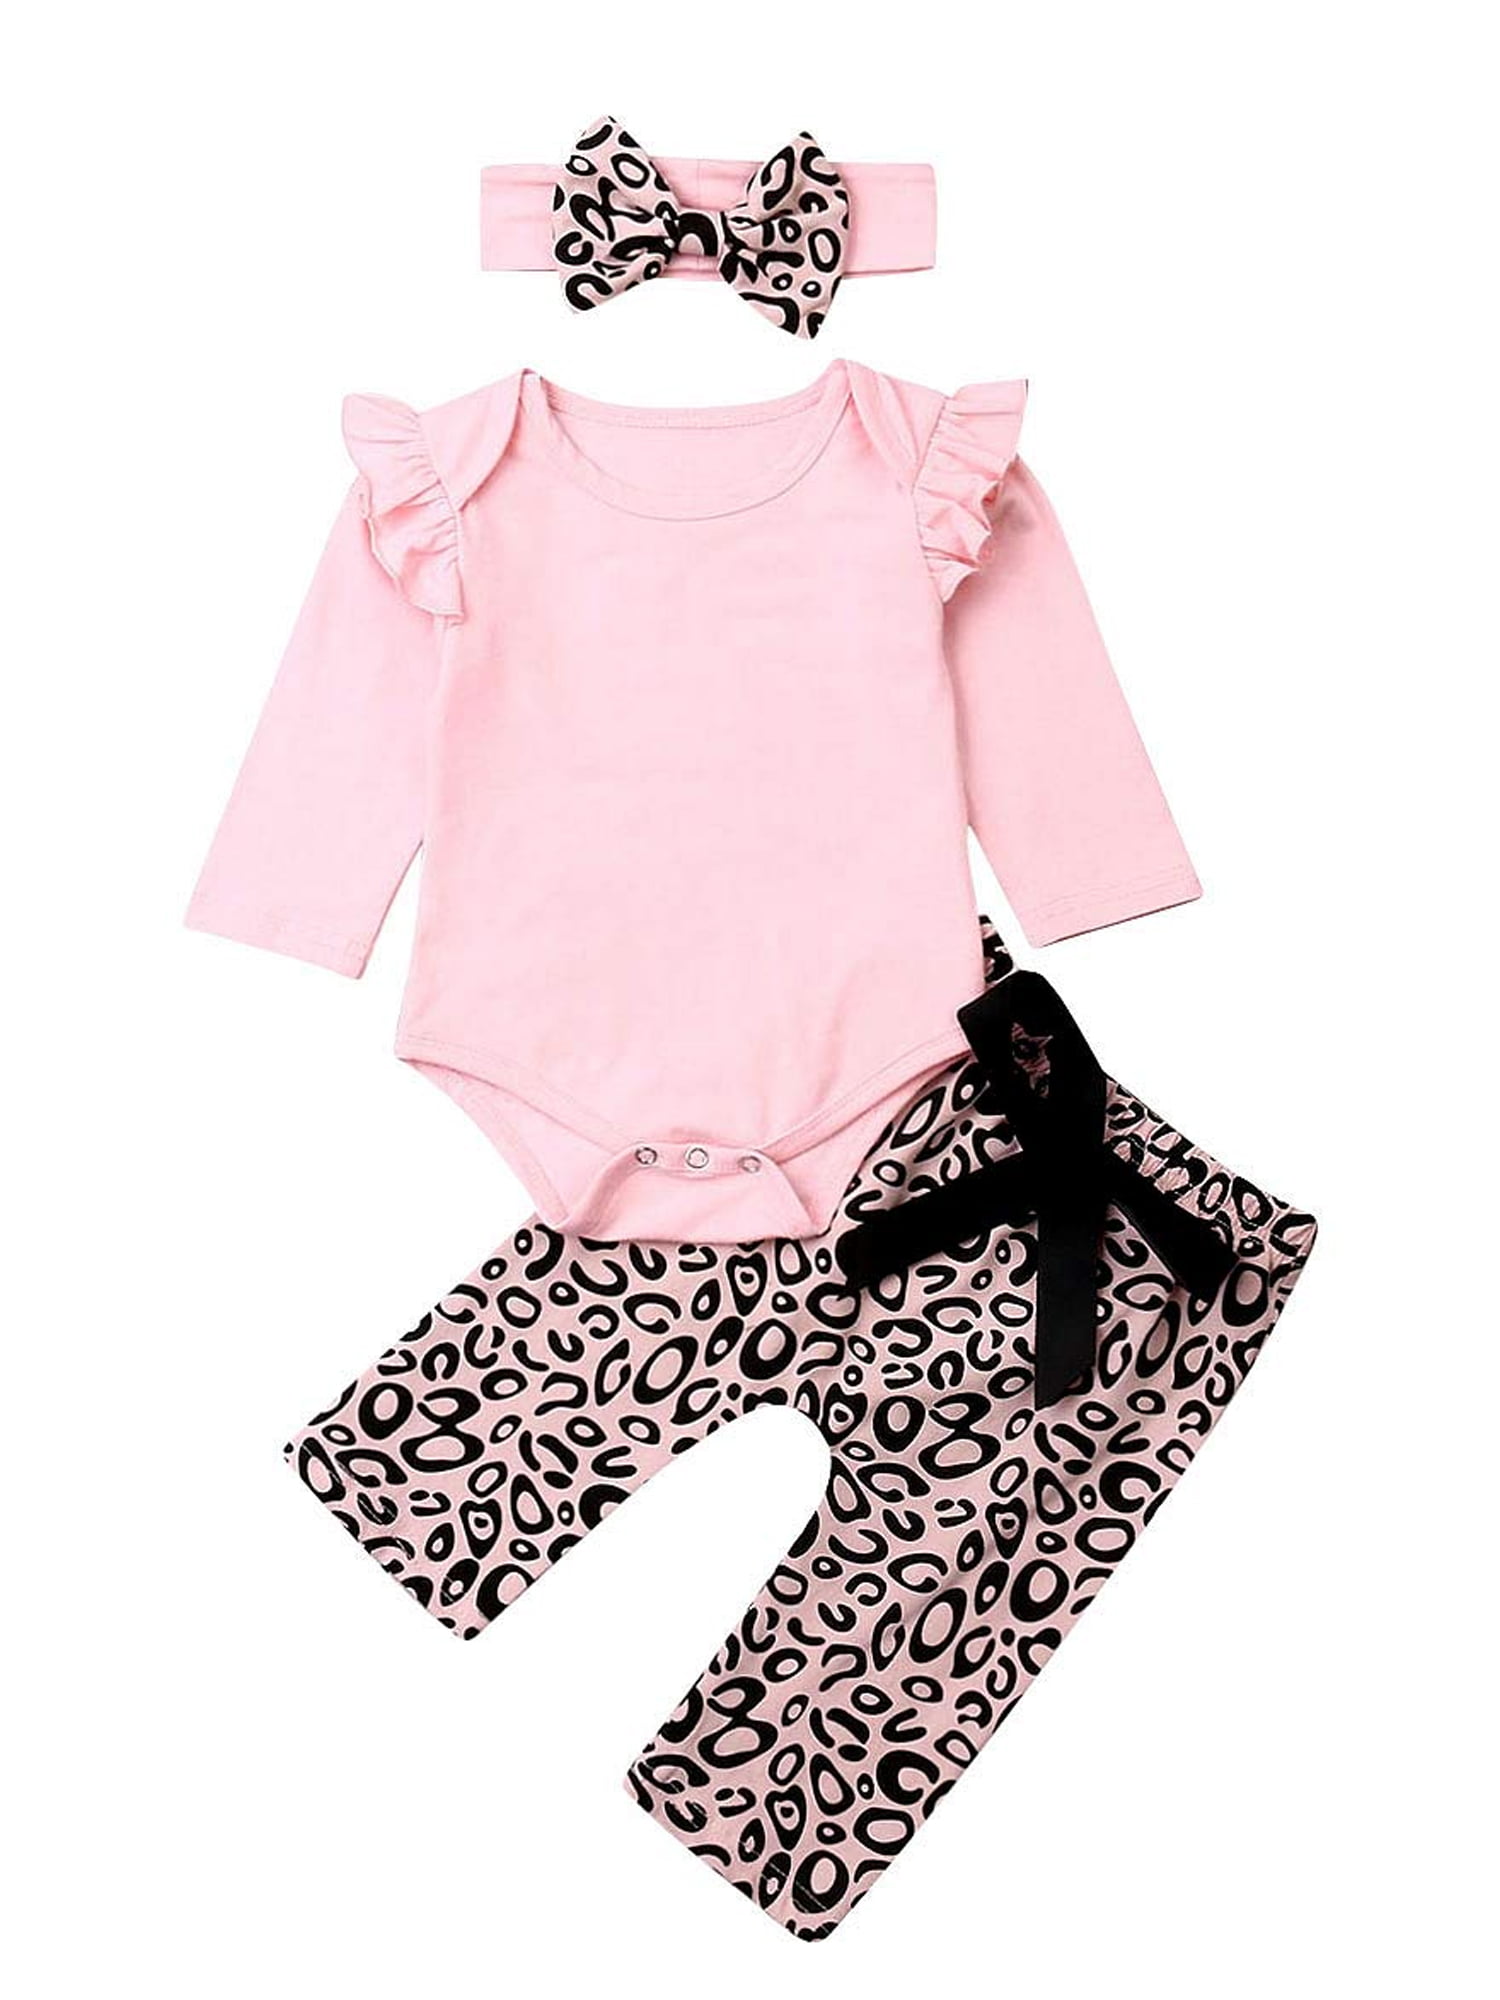 Toddler Baby Girls Skirt Set Ruffle Sleeve Floral Romper Bodysuit+Skirt Dress+Headband